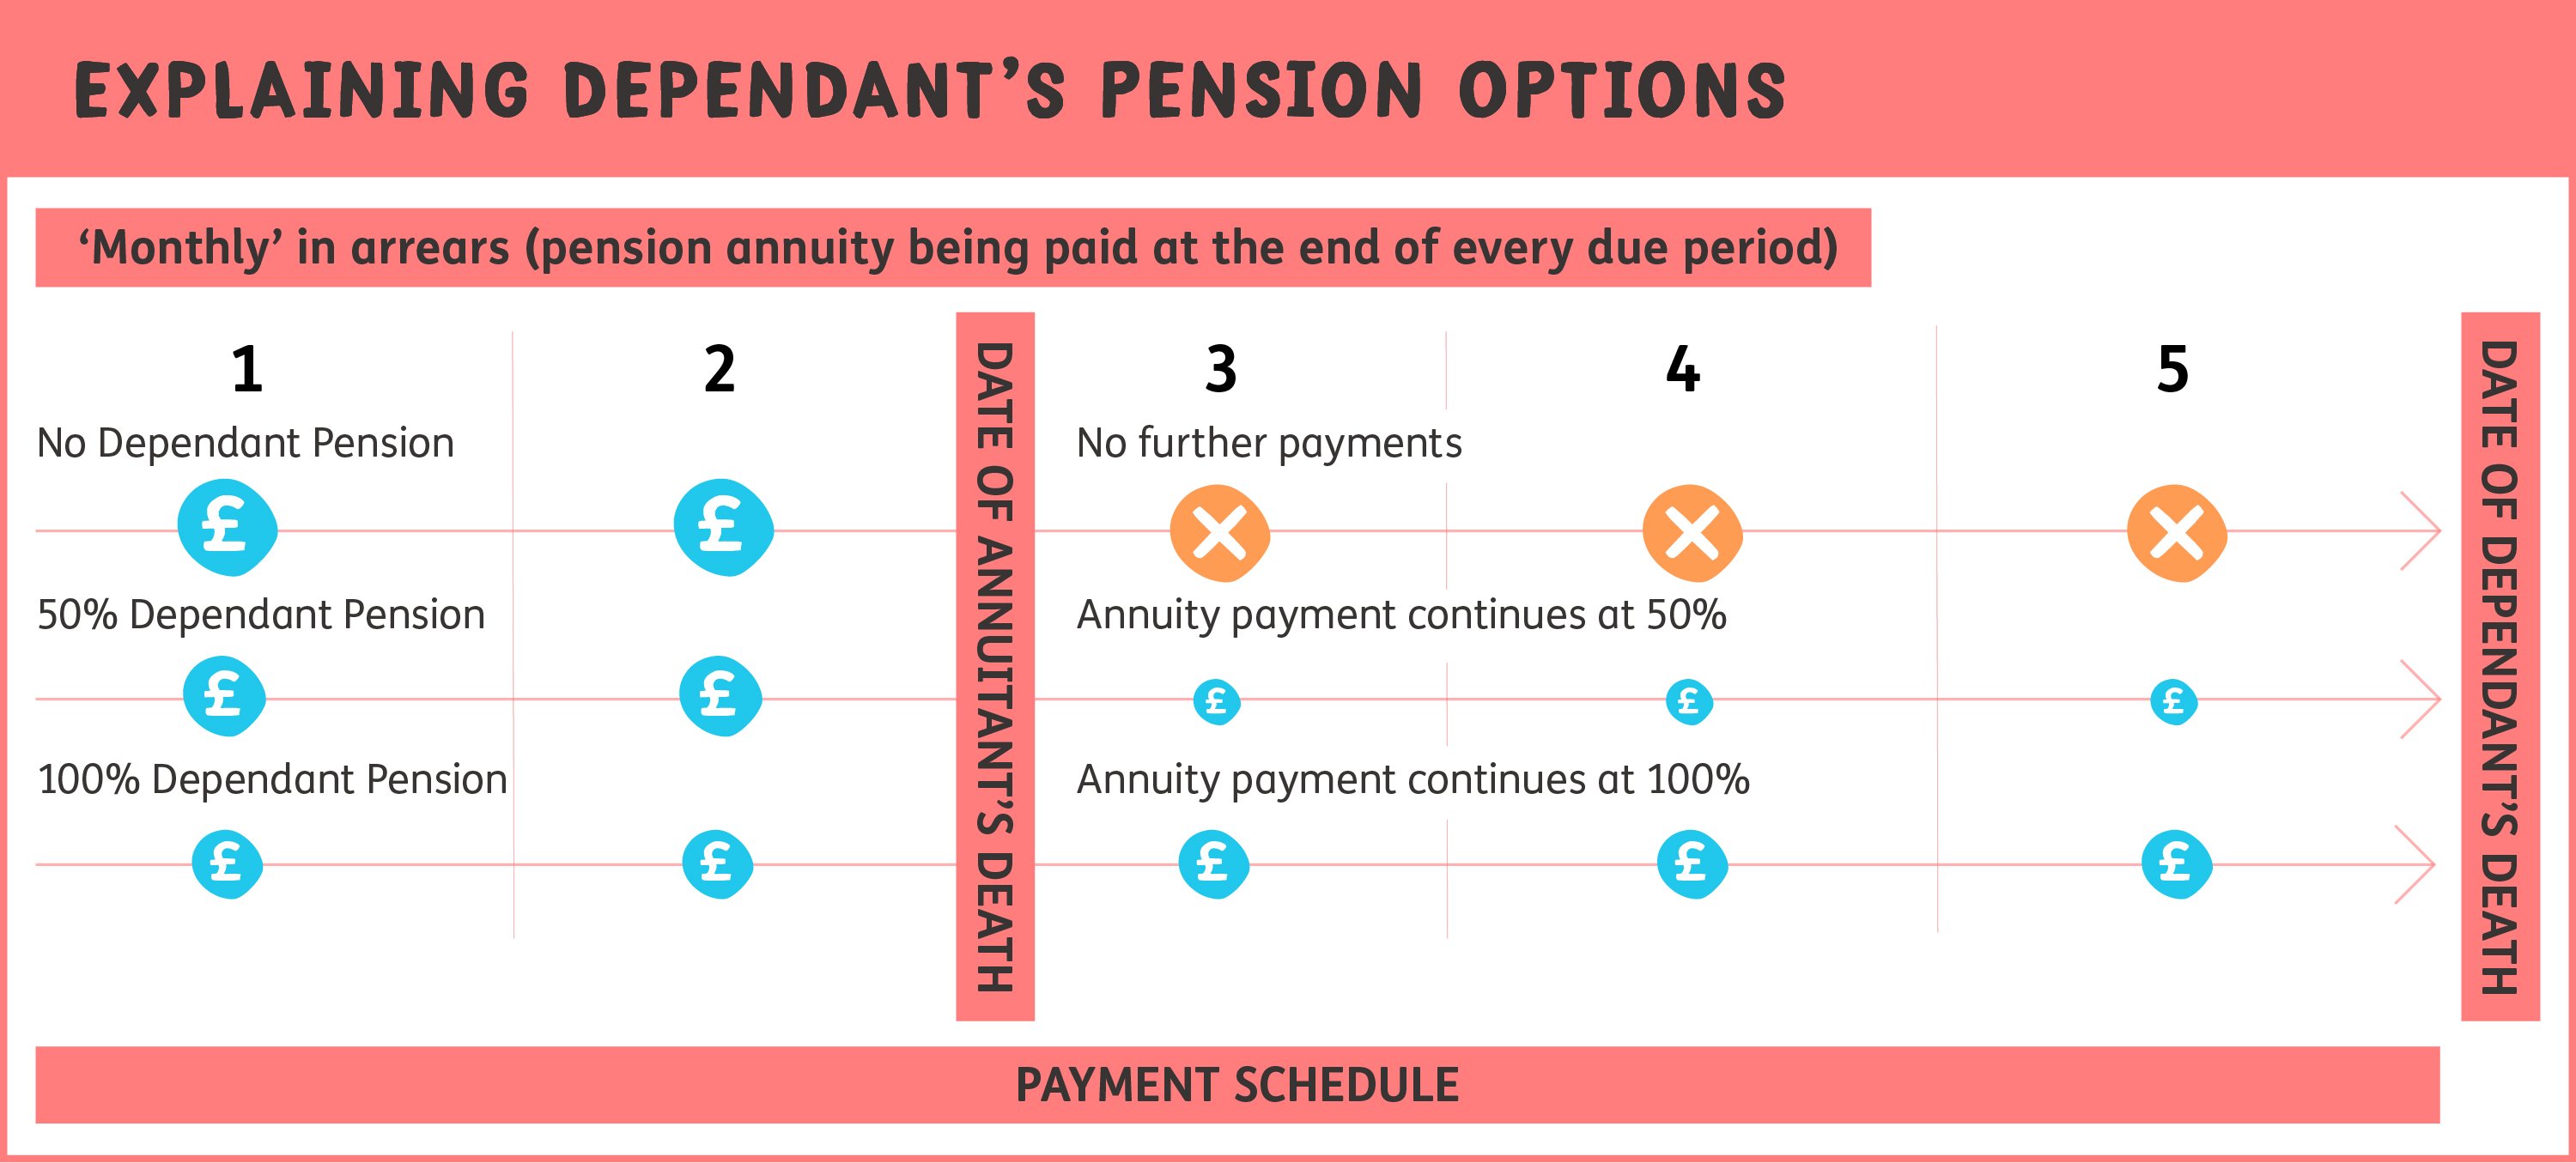 Explaining Dependant's Pension